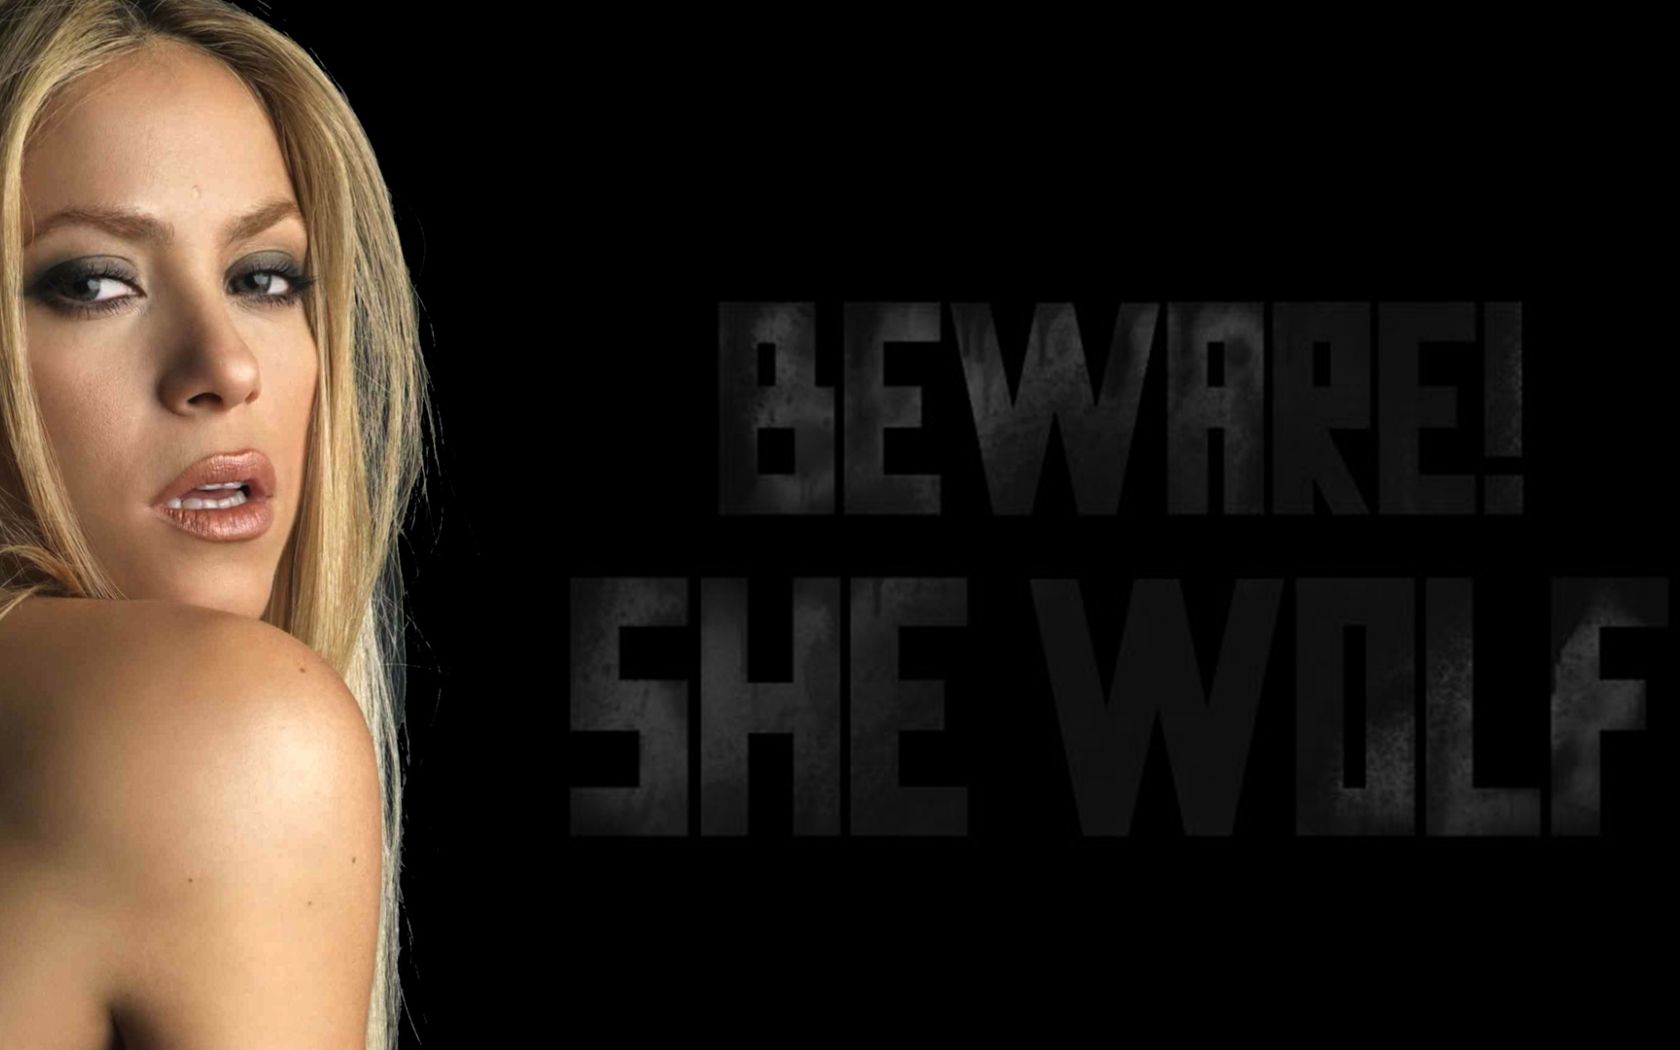 Free download Shakira She Wolf 1920x1080 169 [1920x1080]